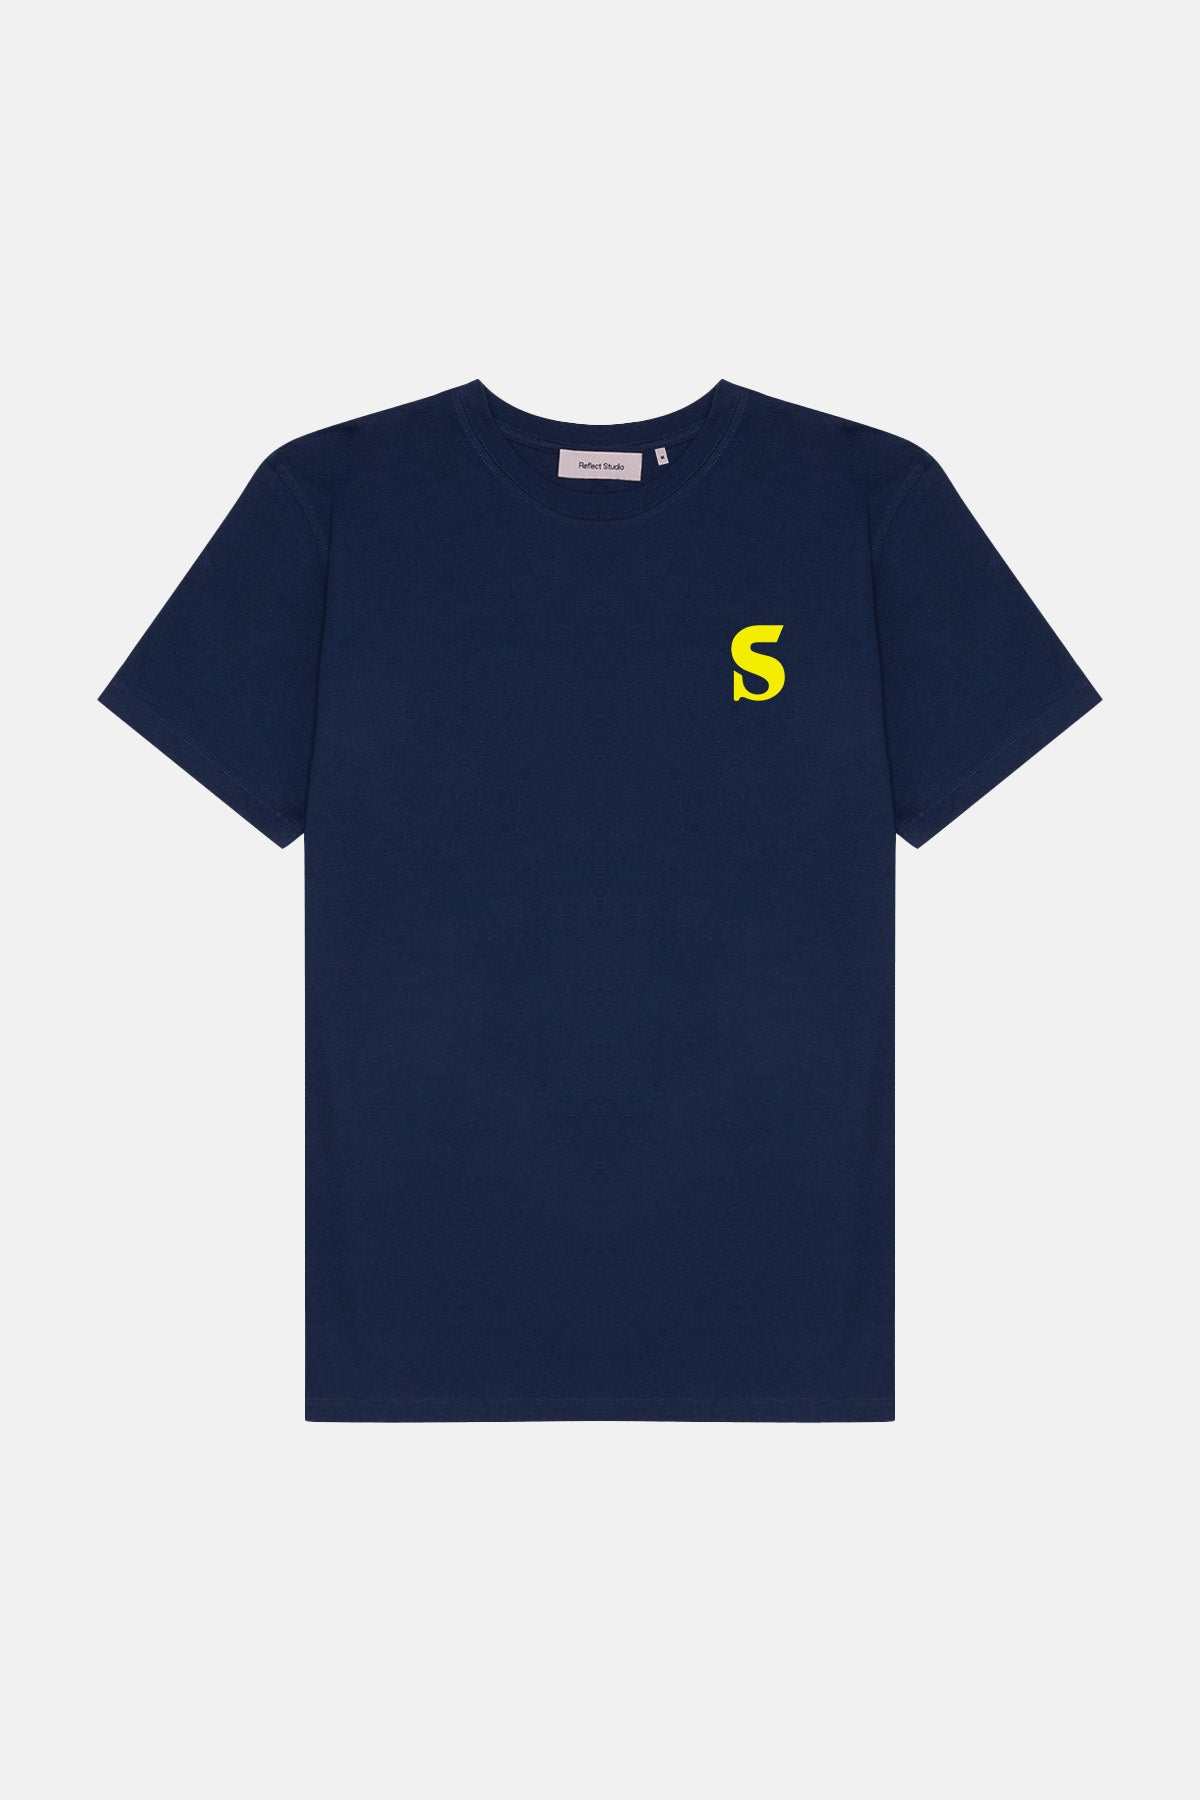 Issue #23 Premium T-Shirt - Lacivert